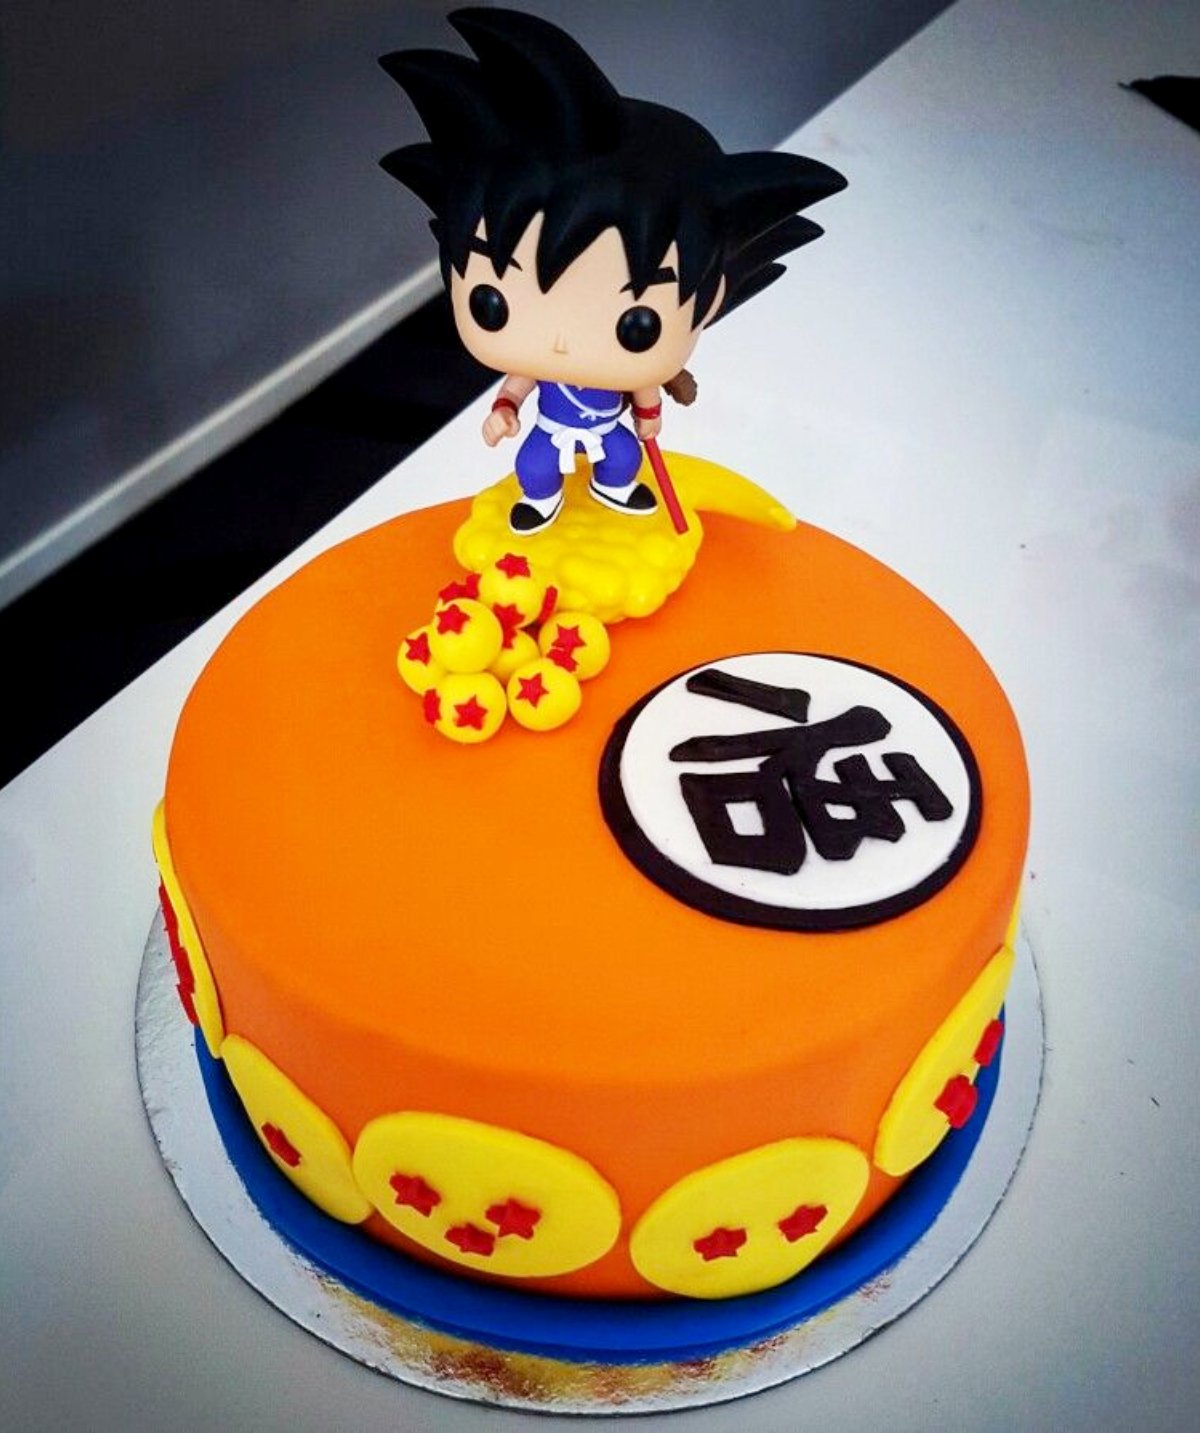 Pastel infantil de Dragon Ball, Gokú para el Día del Niño.